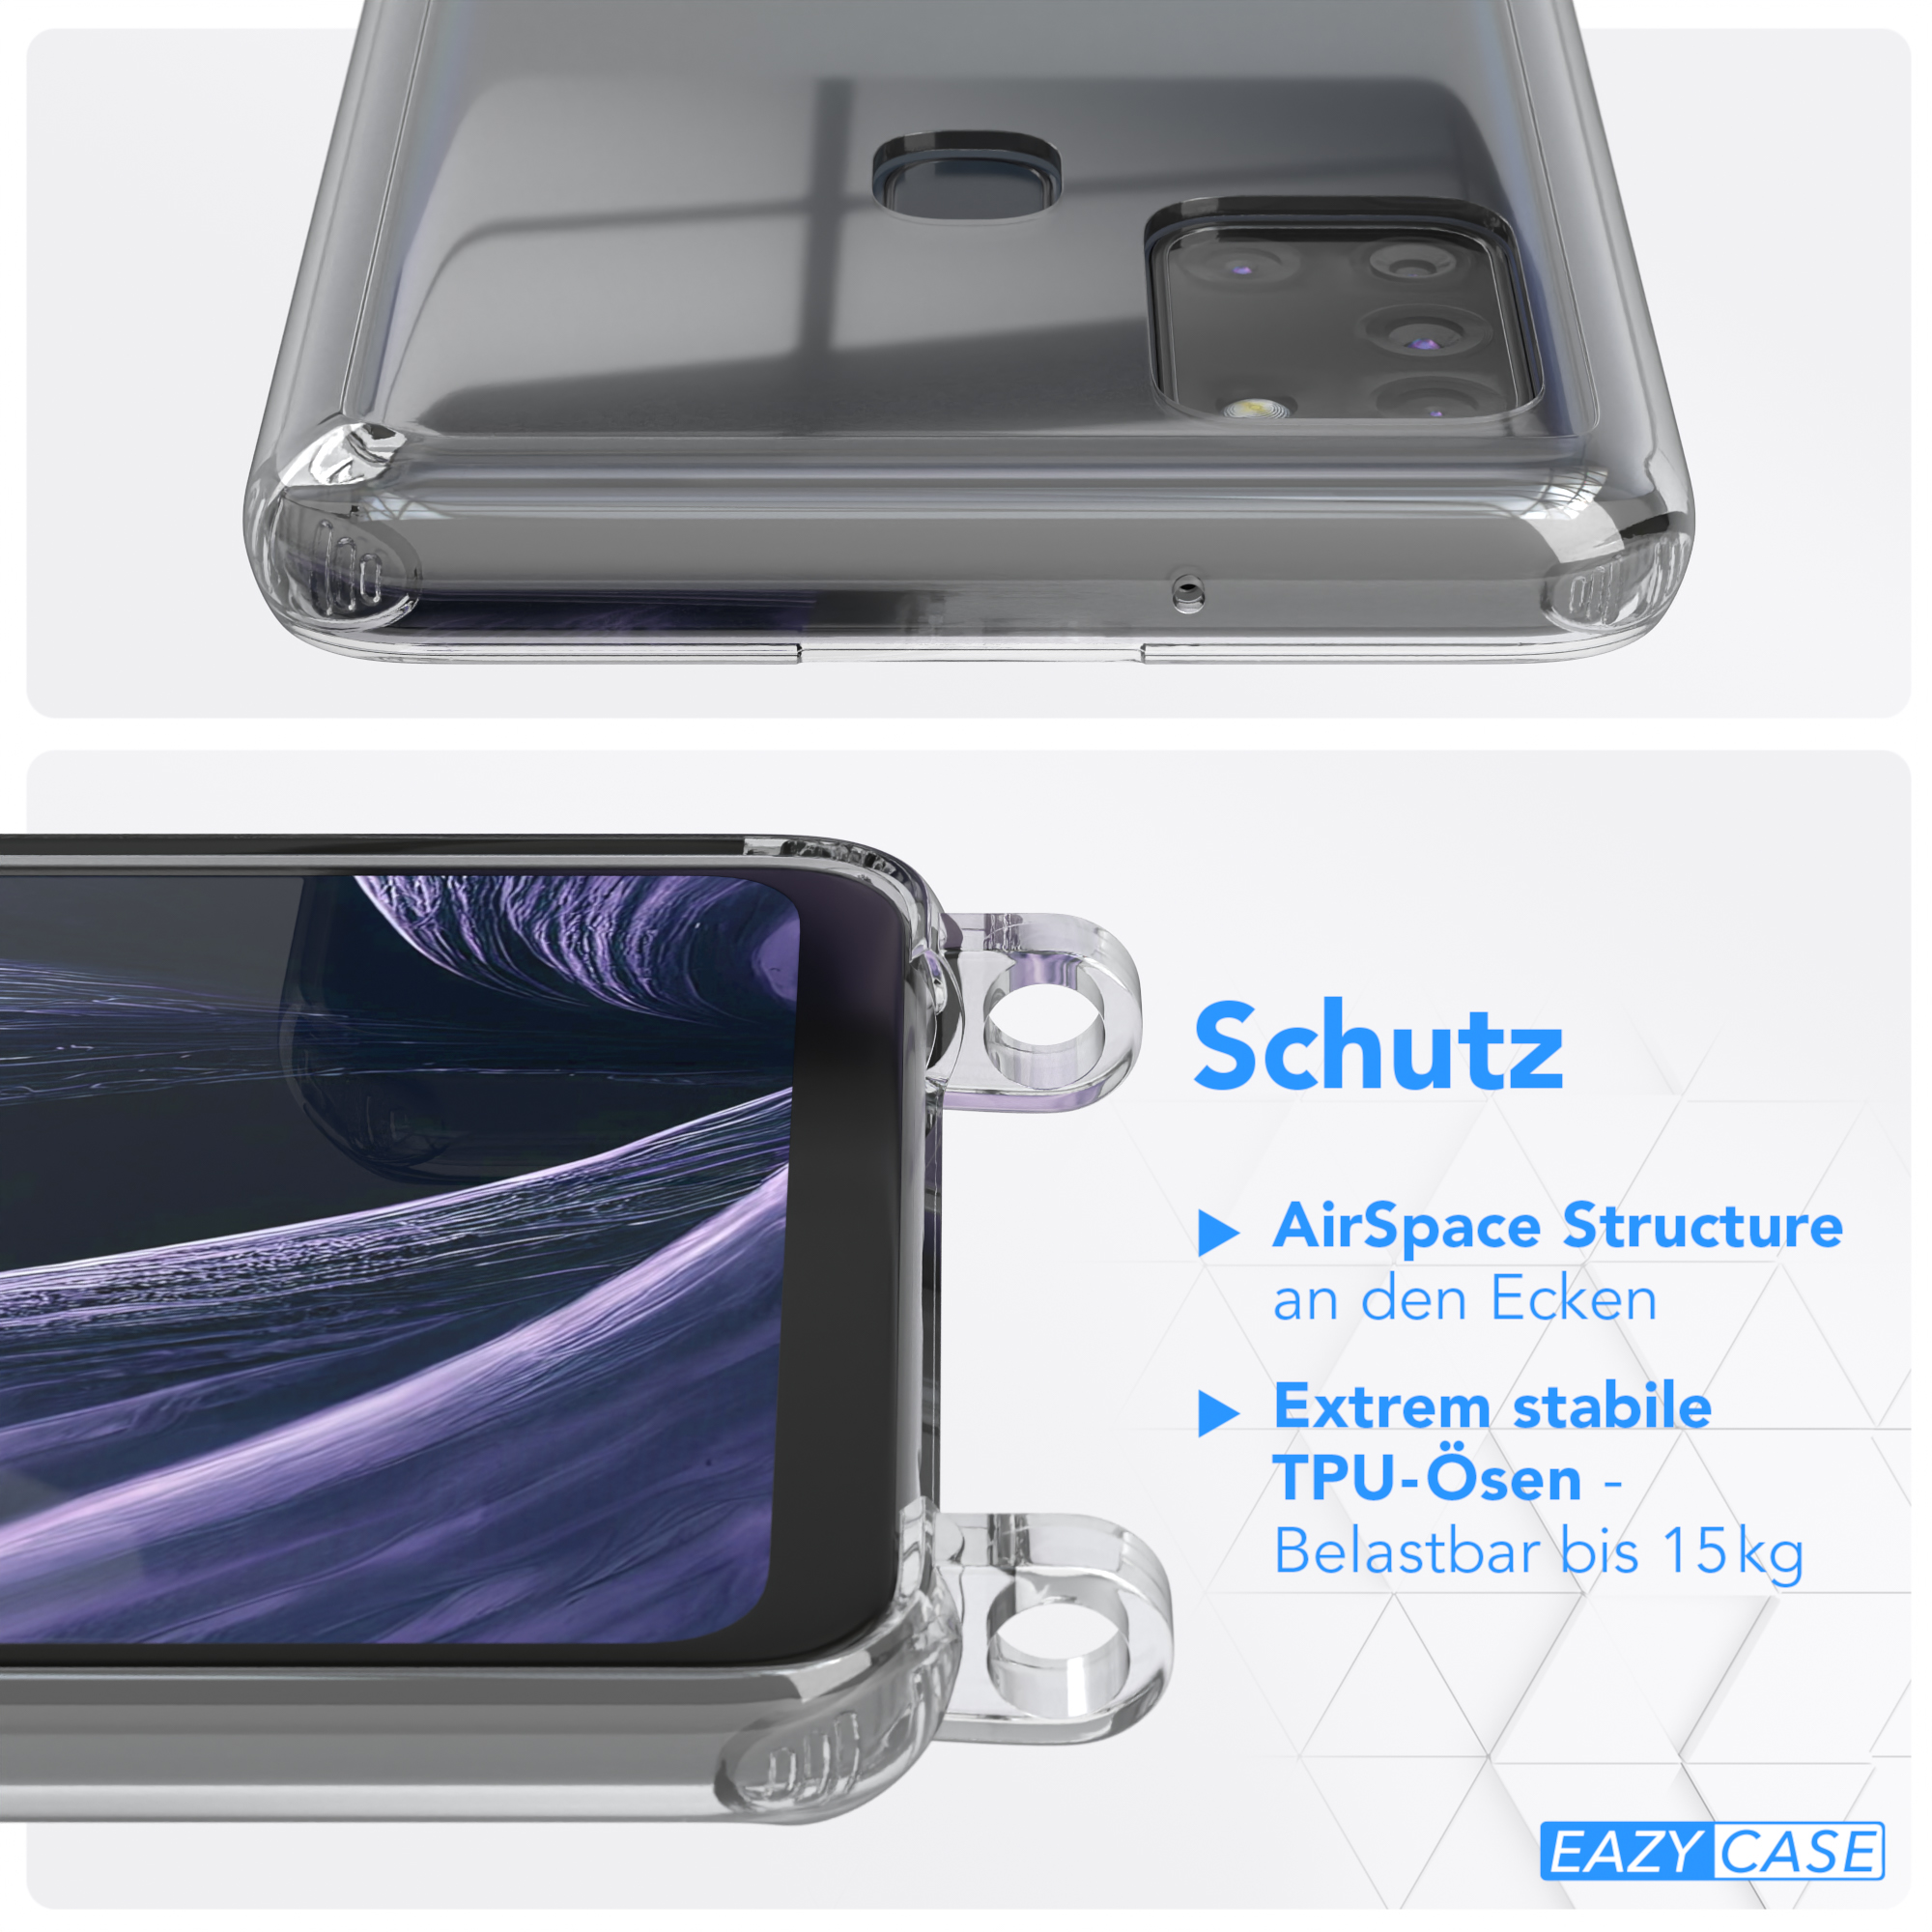 A21s, CASE Kordel Transparente / Gold Galaxy Flieder Umhängetasche, EAZY Karabiner, mit Samsung, + breiter Handyhülle